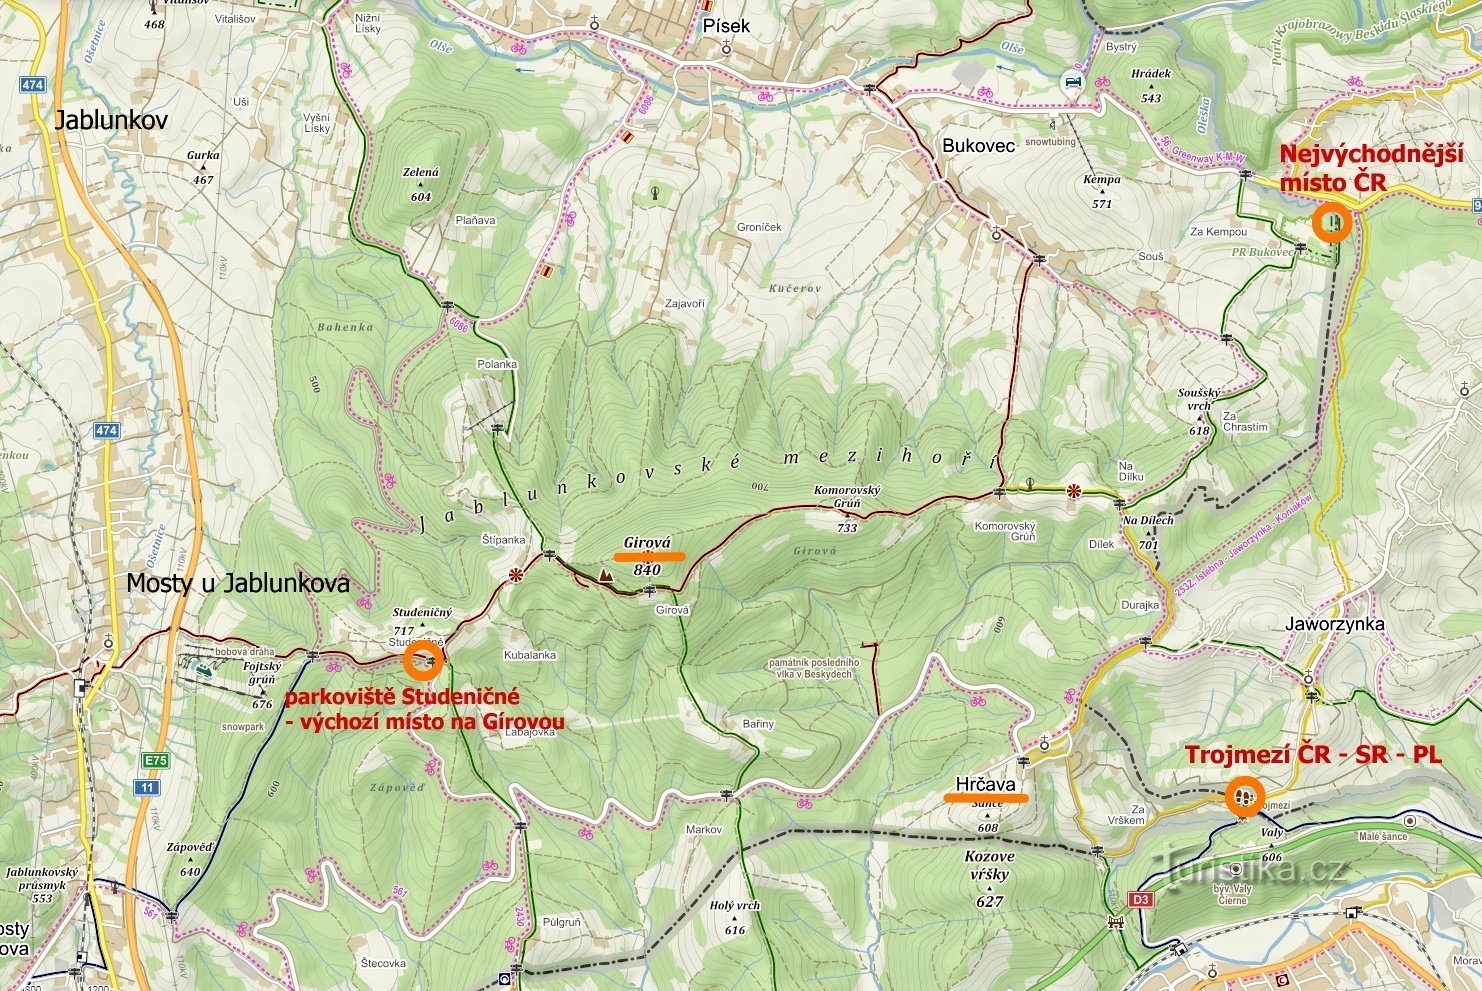 bản đồ các địa điểm đã ghé thăm: Điểm cực đông của Cộng hòa Séc, Hrčava - Trojmezí, Jablunkovské m